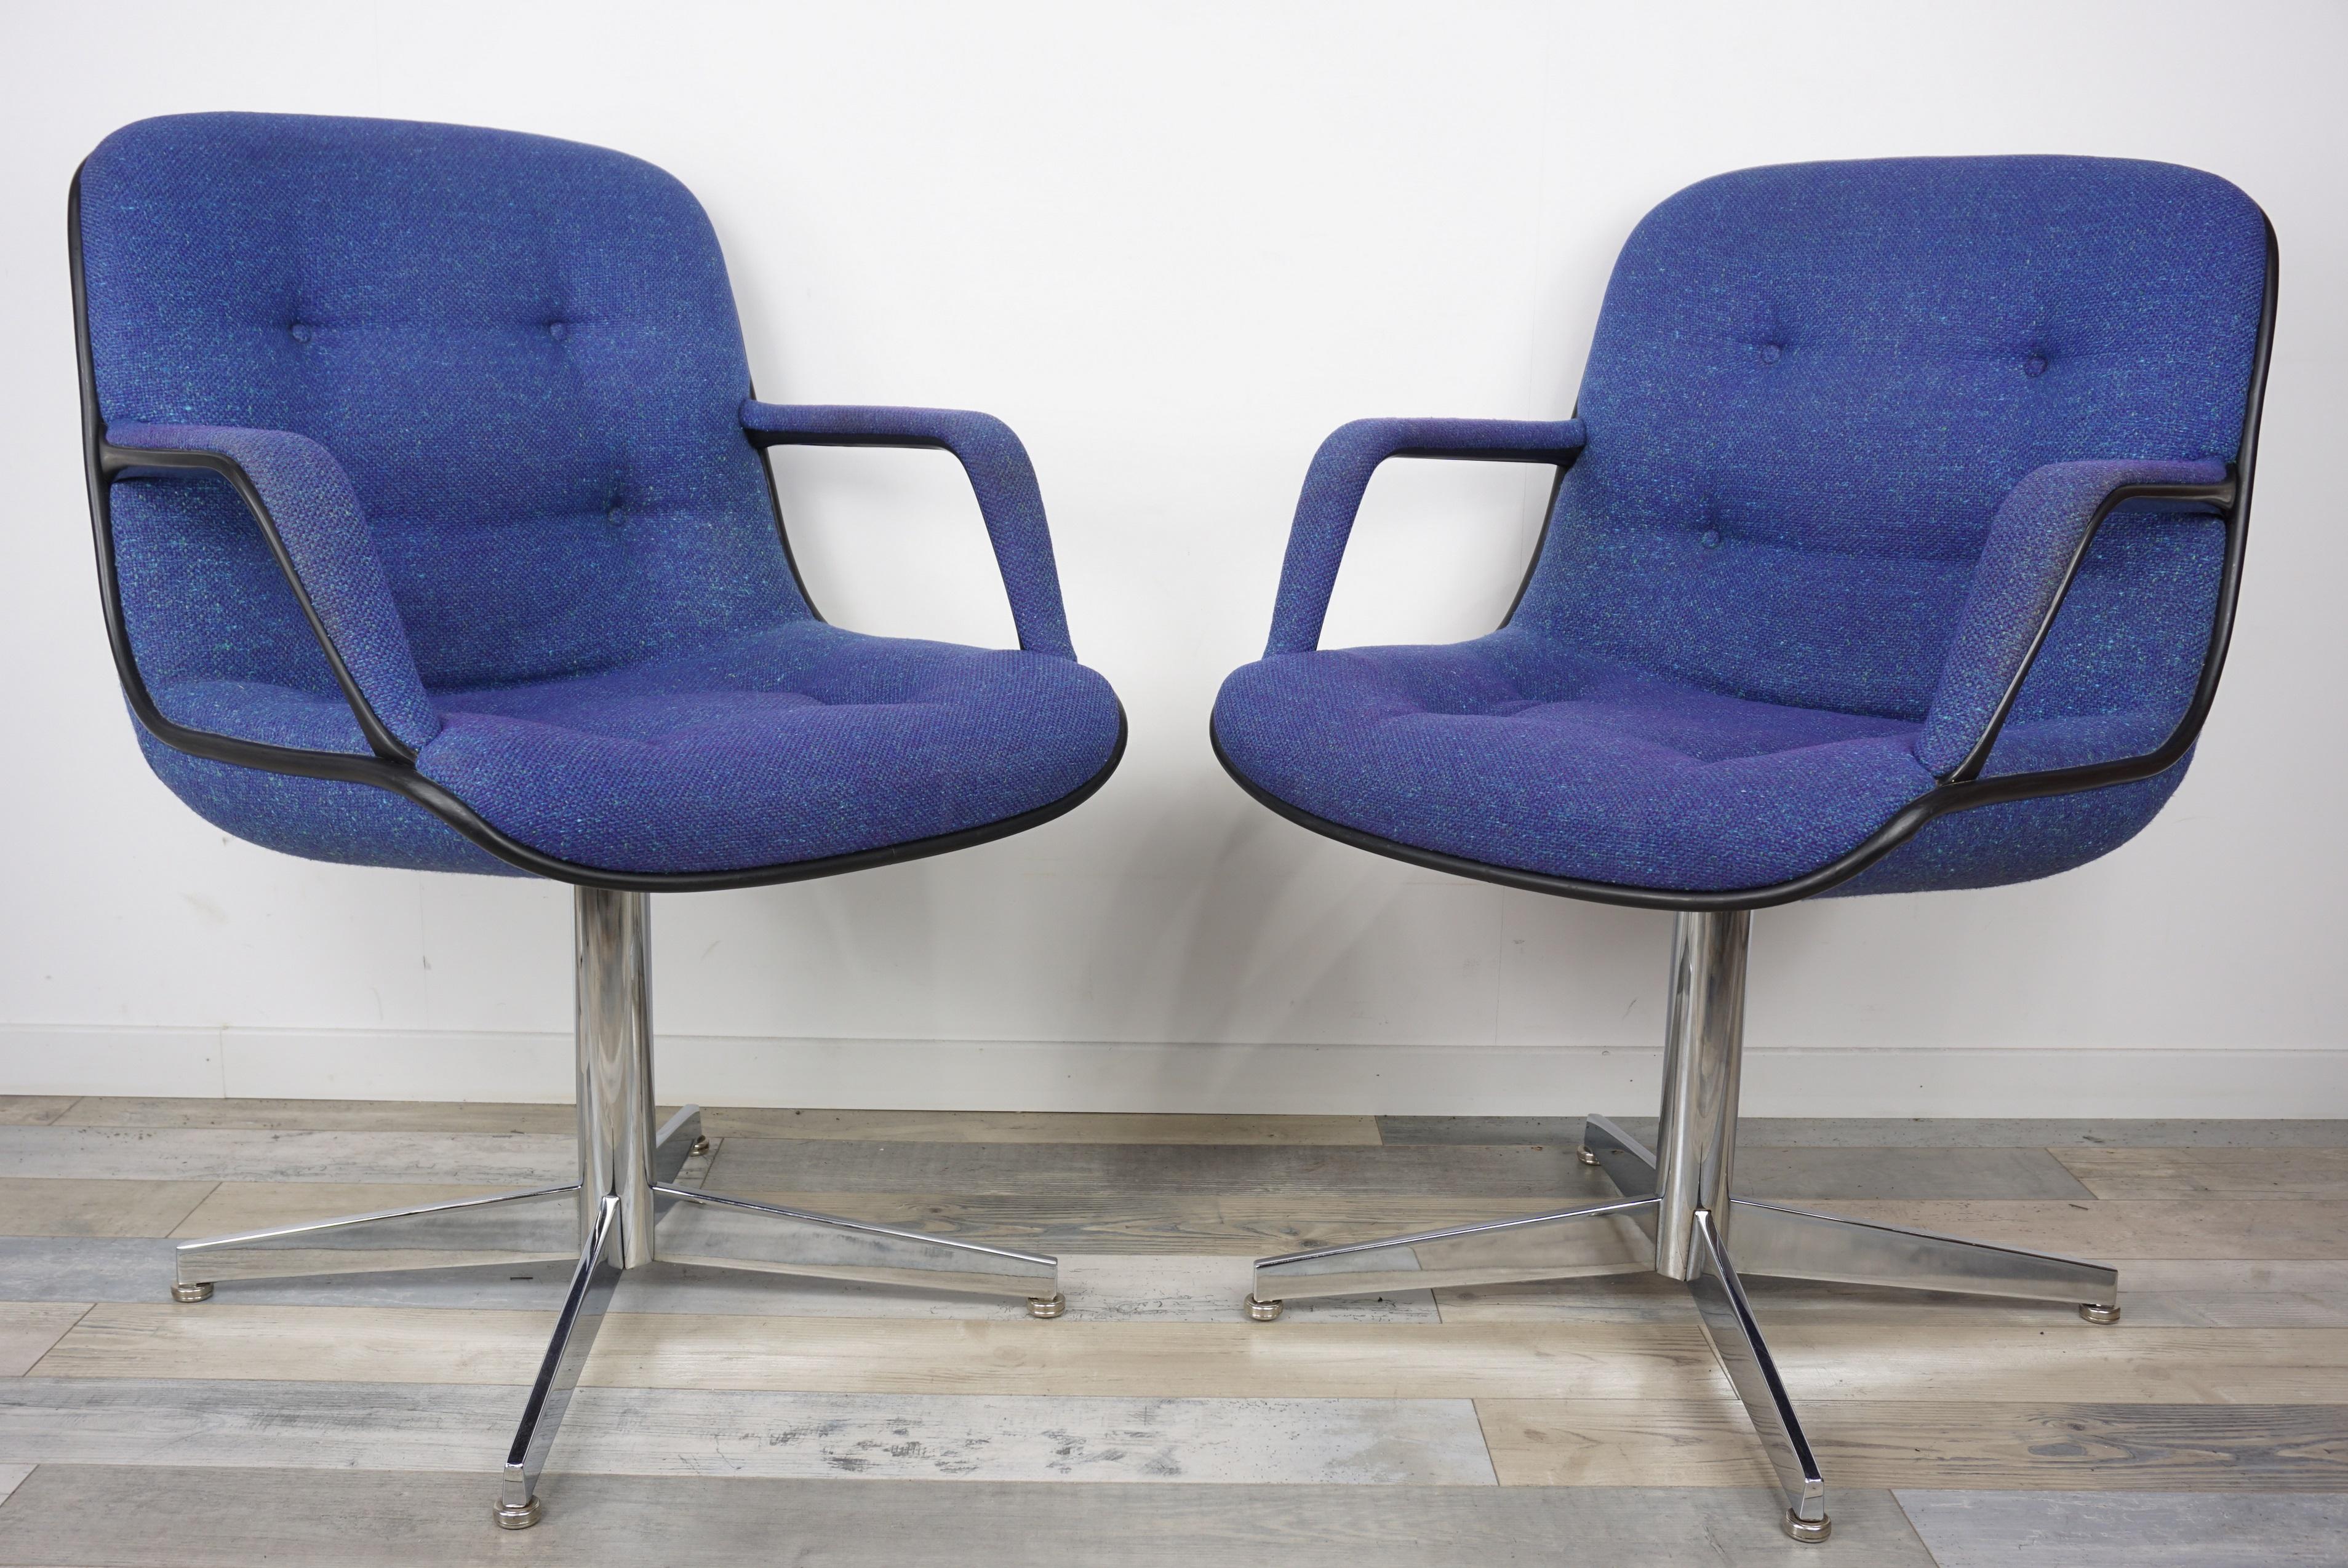 Paire de chaises Strafor modèle 451 par Randall Buck 1960-1970 ; de hauteur fixe:: la hauteur du siège est de 49 cm:: la hauteur des accoudoirs est de 63 cm:: elles sont ornées d'un tweed bleu intense. Ils ne tournent pas mais font tourner les têtes